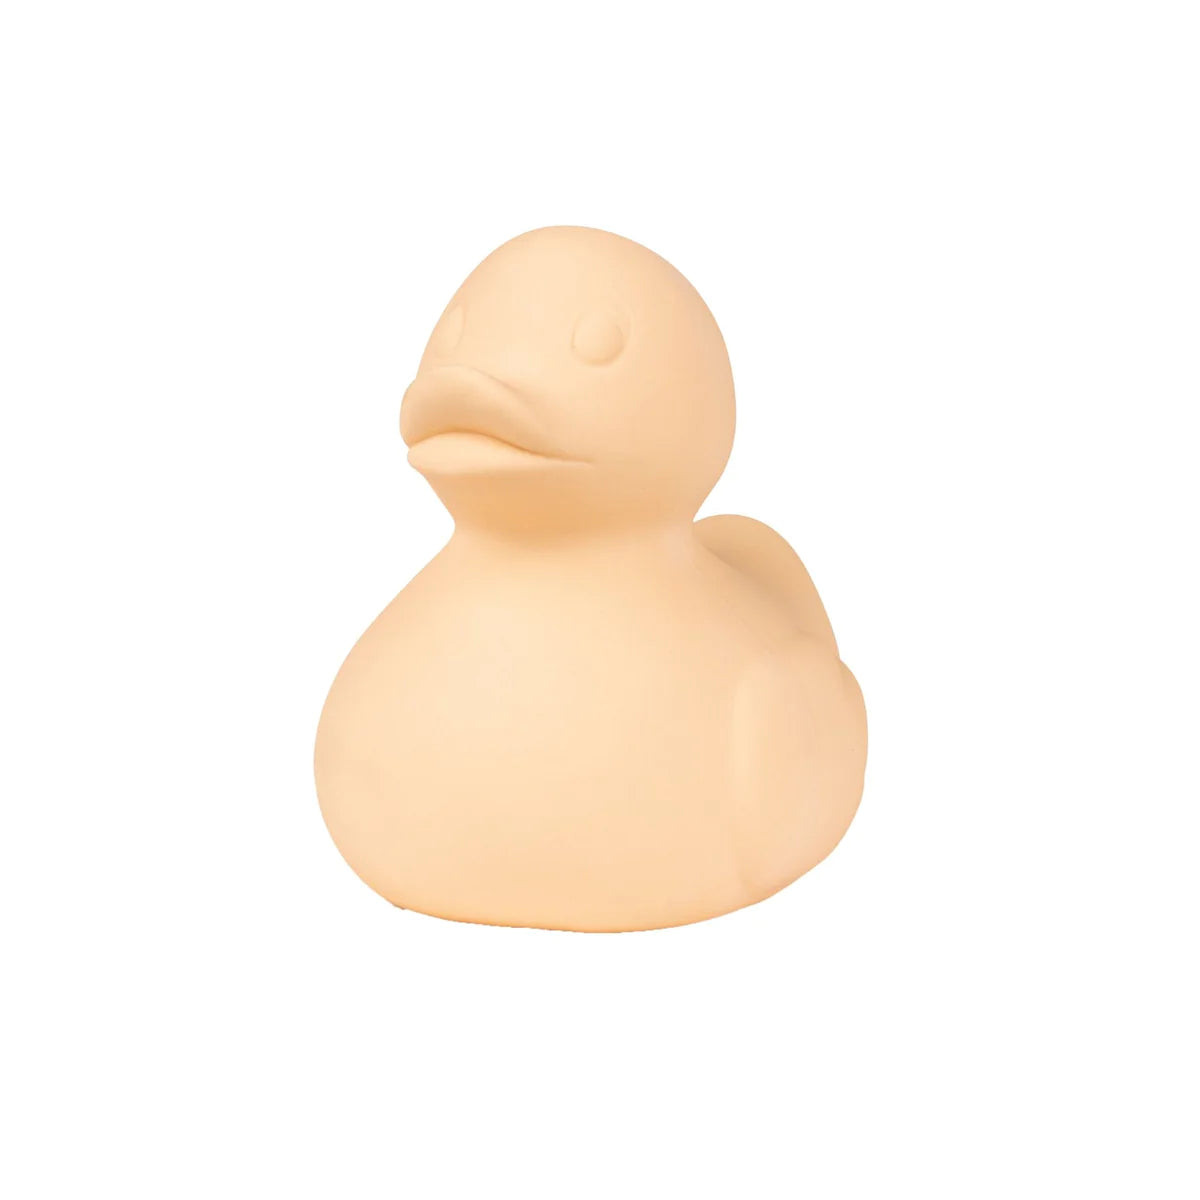 Small Duck - Monochrome Nude